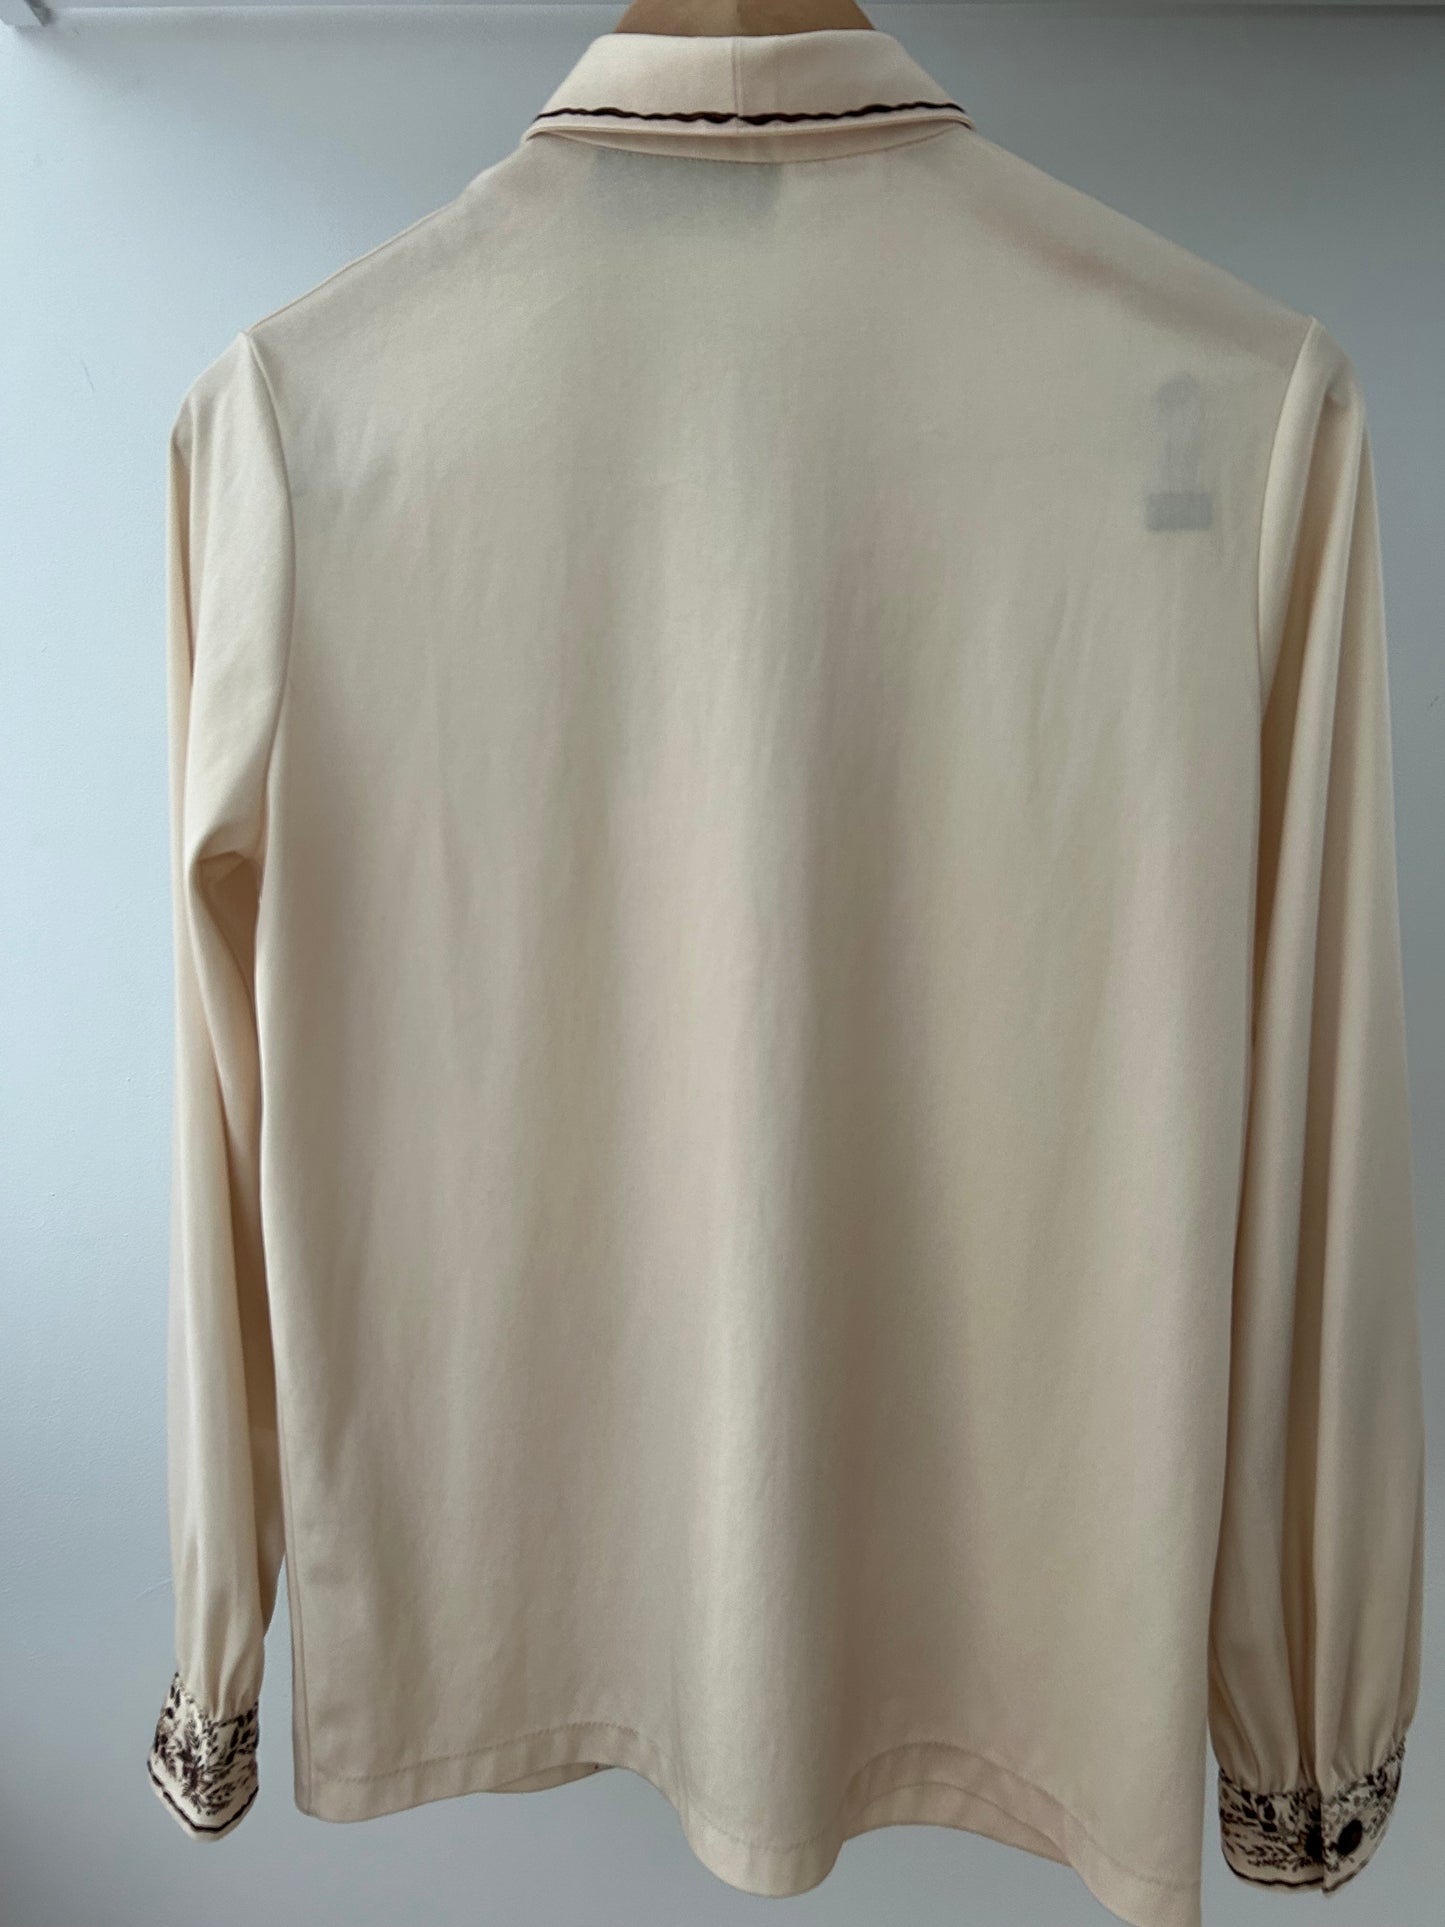 Vintage 1970s STUDIO MODELLE UK Size 12 Cream & Brown Floral & Leaf Print Long Sleeve Shirt